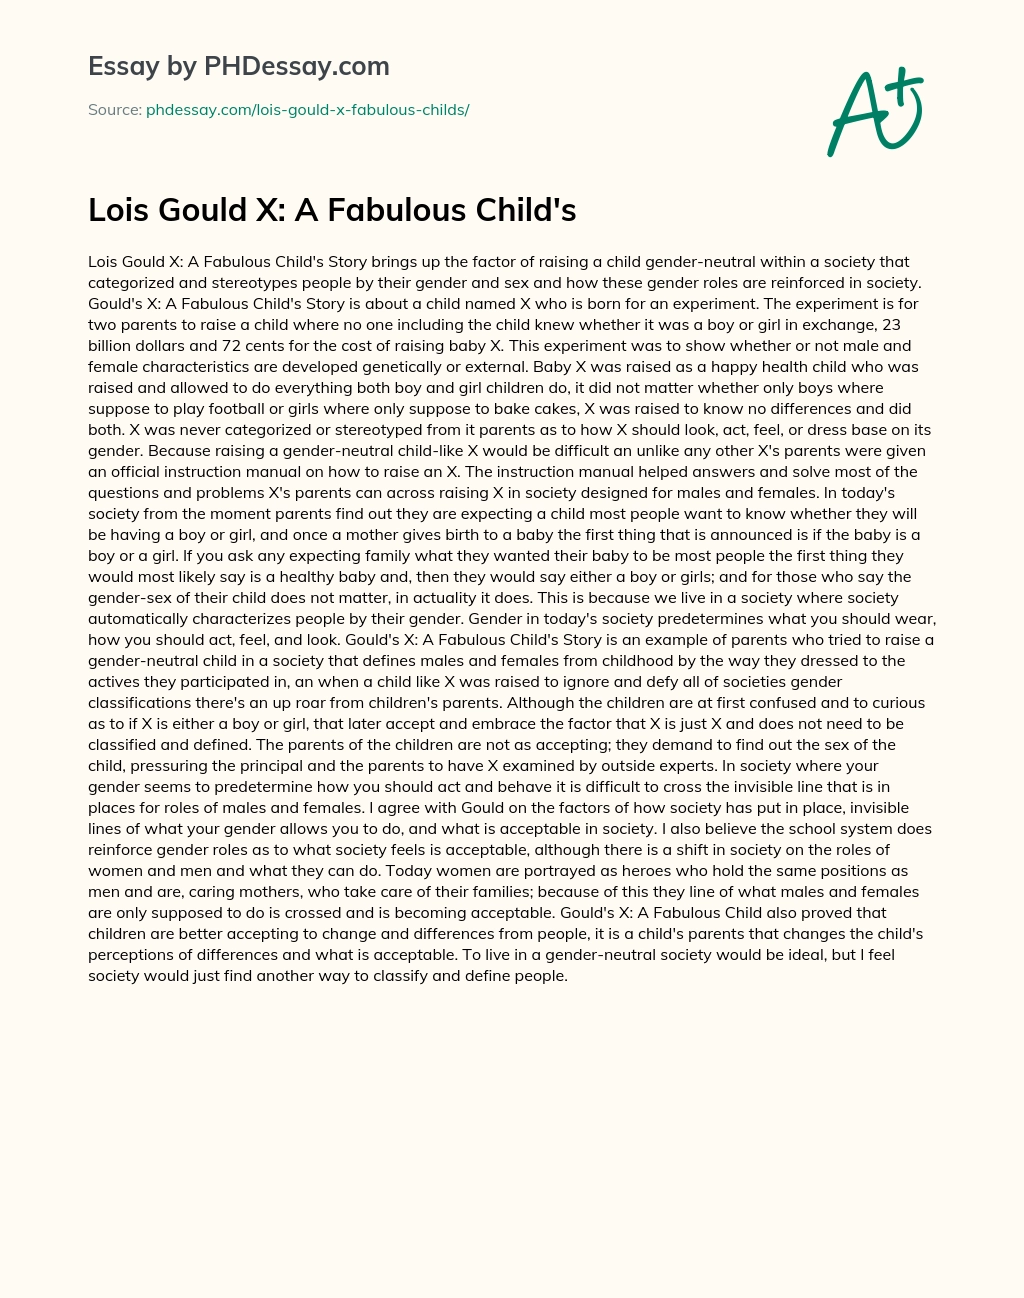 Lois Gould X: A Fabulous Child’s essay